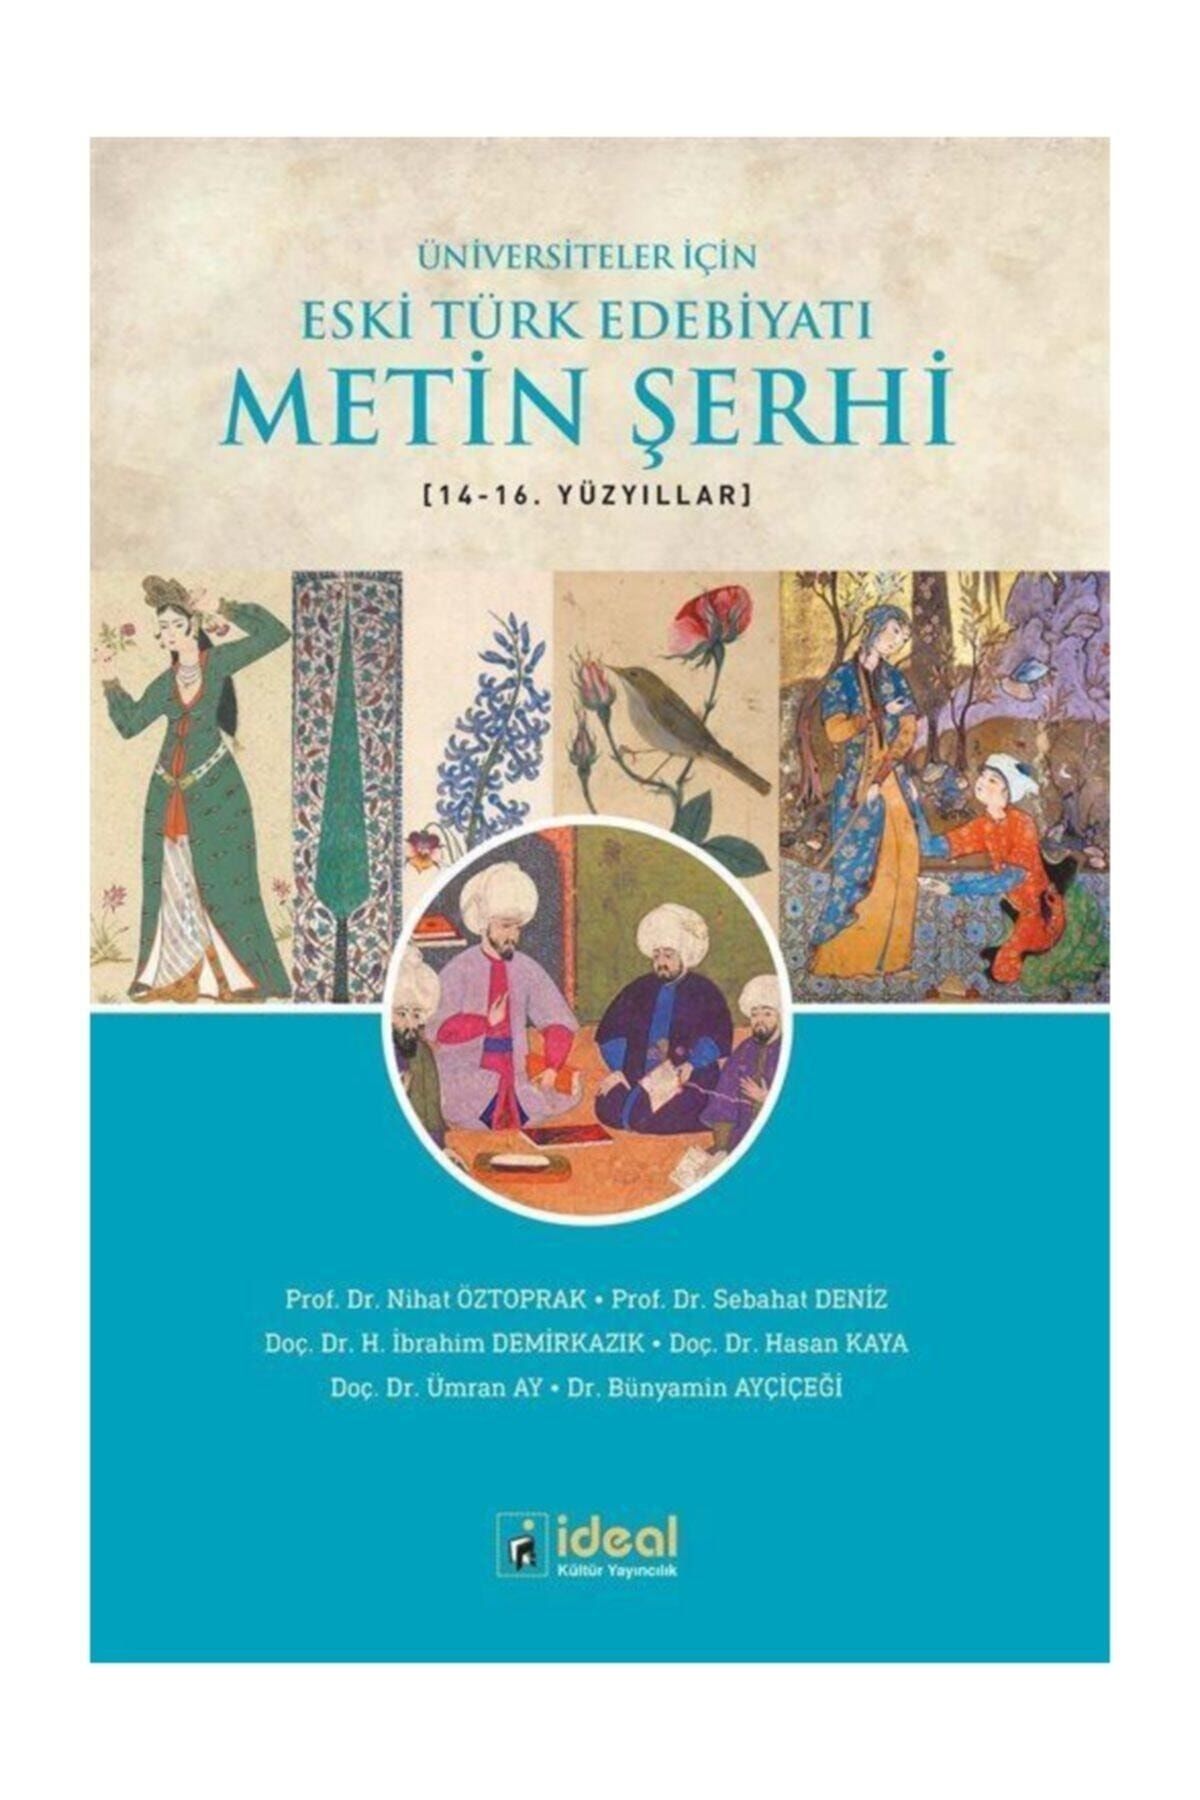 İdeal Kültür Yayıncılık Üniversiteler Için Eski Türk Edebiyatı Metin Şerhi (14. VE 16. YÜZYILLAR)